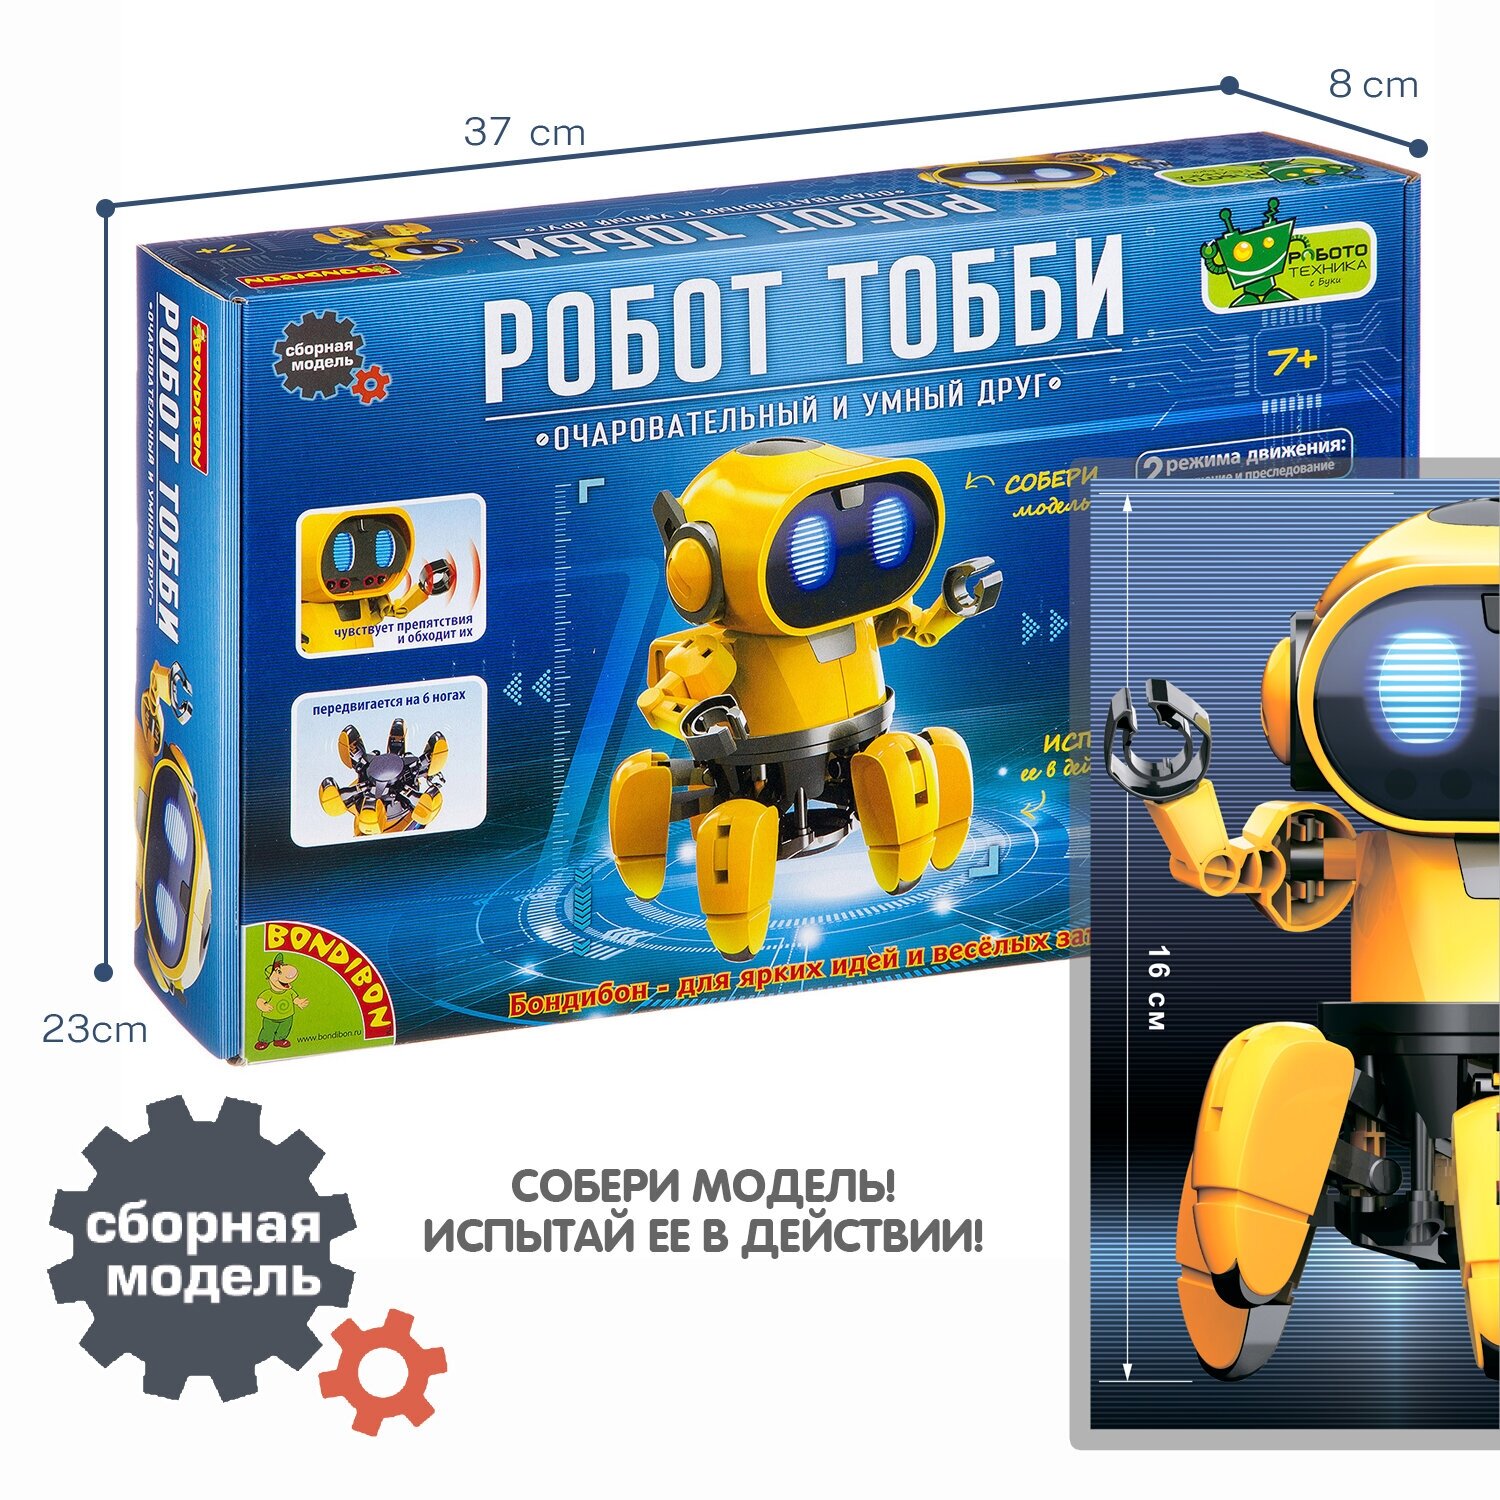 Робот Тобби умная игрушка многоножка Bondibon интерактивный электронный конструктор с искусственным интеллектом / Подарок для мальчика